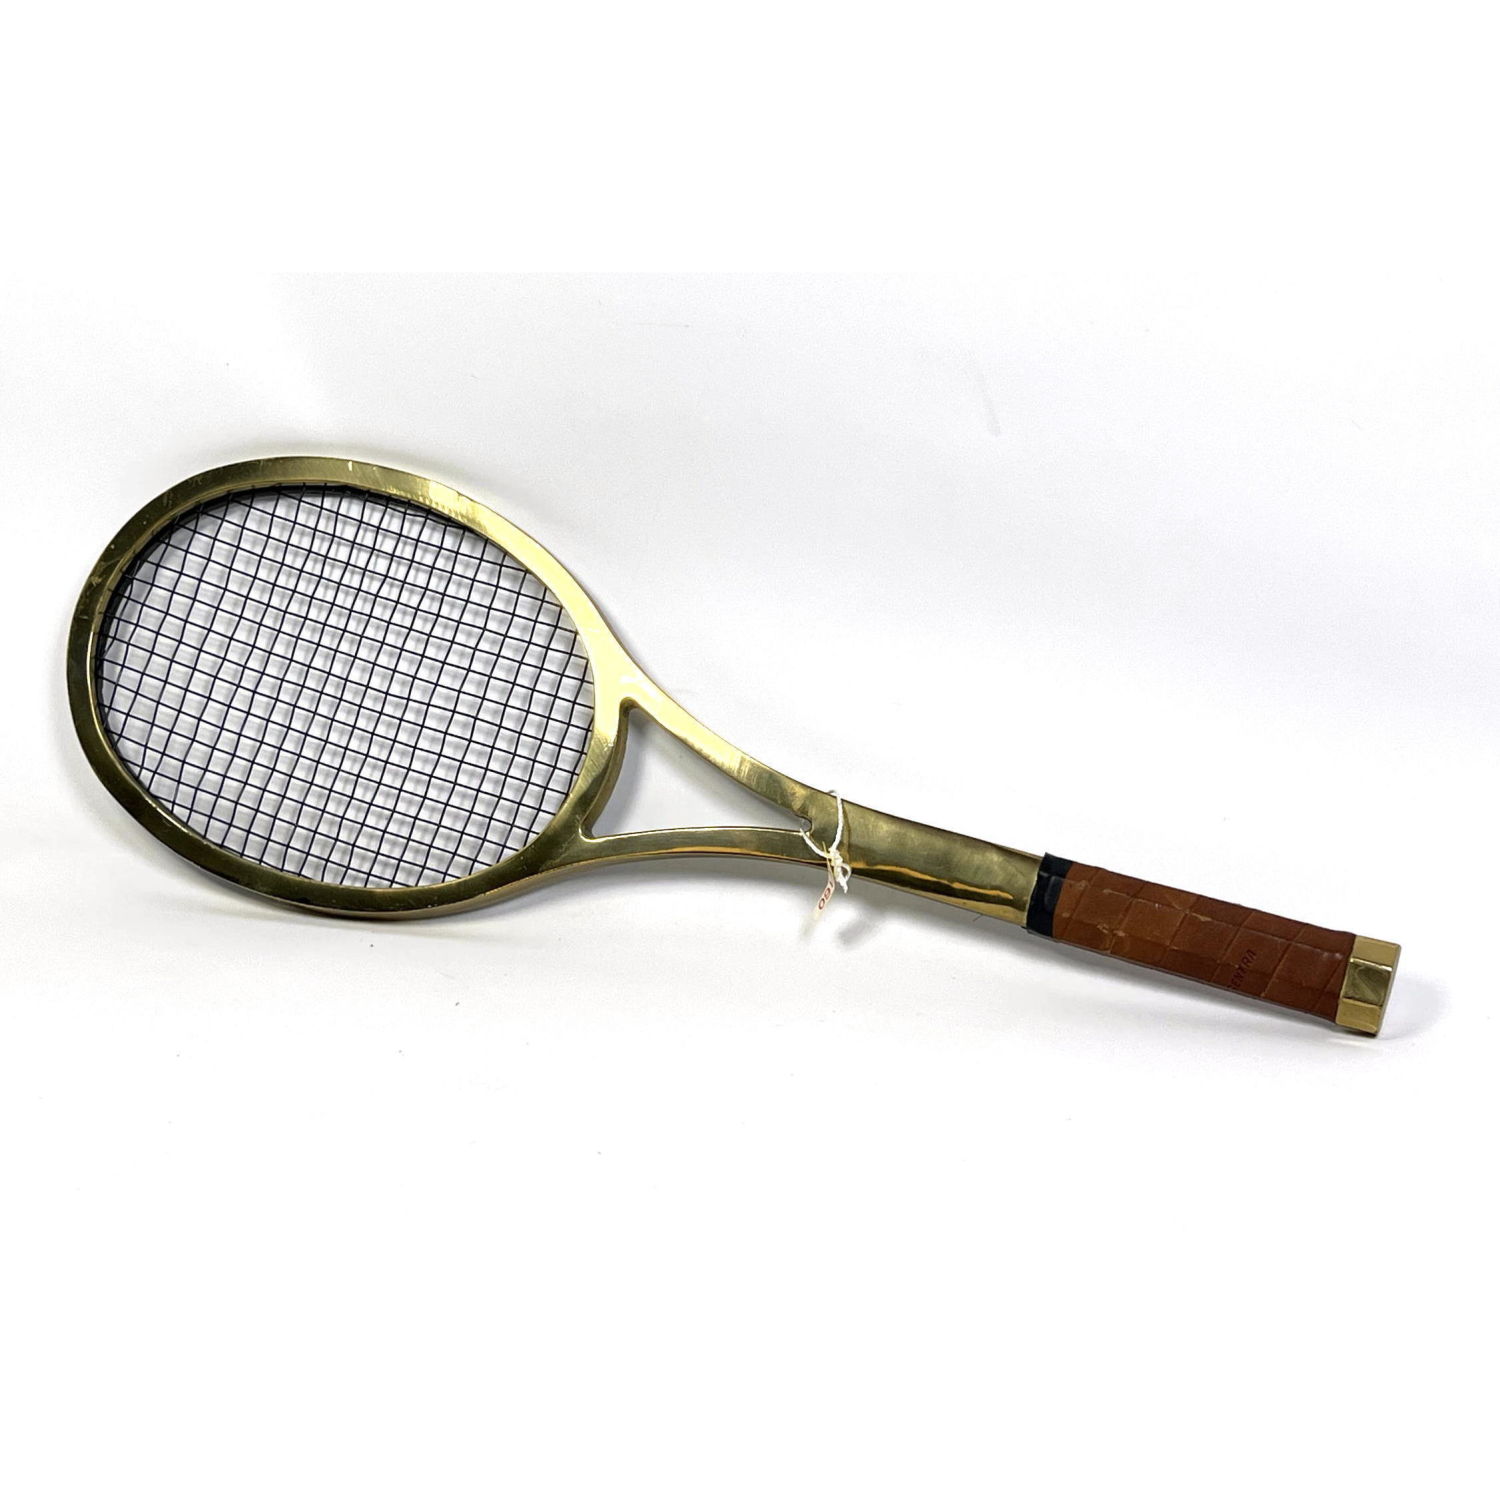 Decorator Brass Tennis Racket. Wall